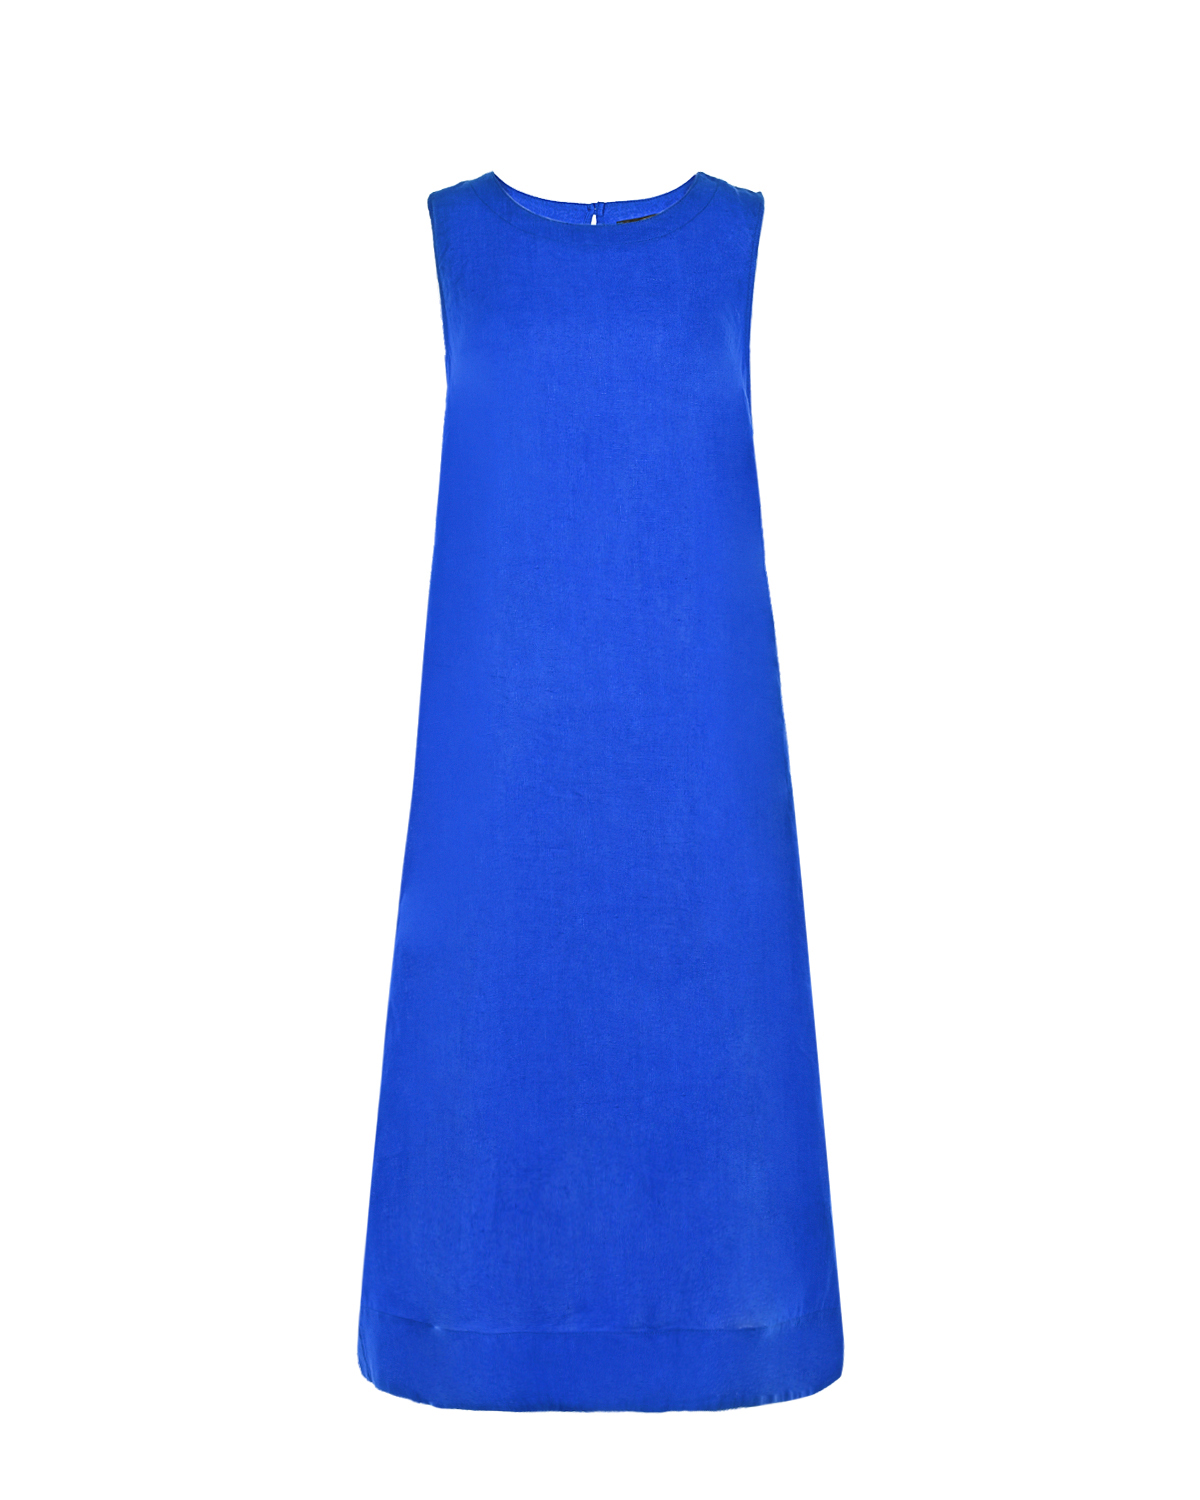 Льняное платье синего цвета Pietro Brunelli, размер 38